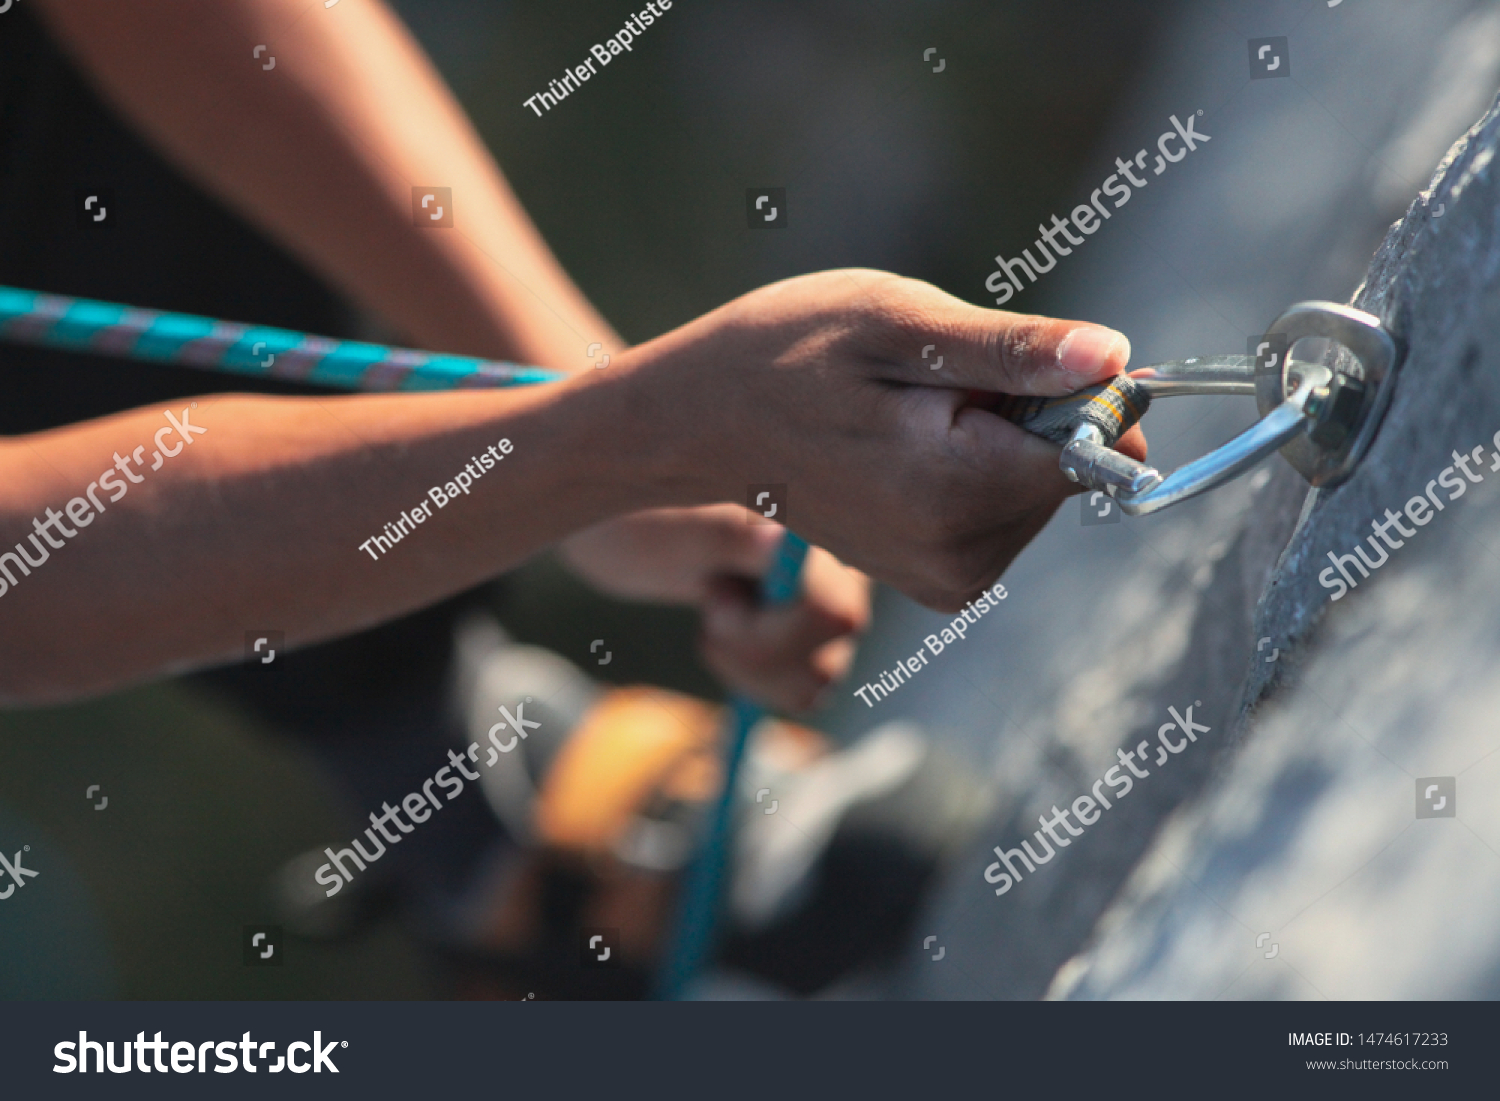 Climbing, climbing equipment, grip, draw, rope, mountain, mountaineering #1474617233